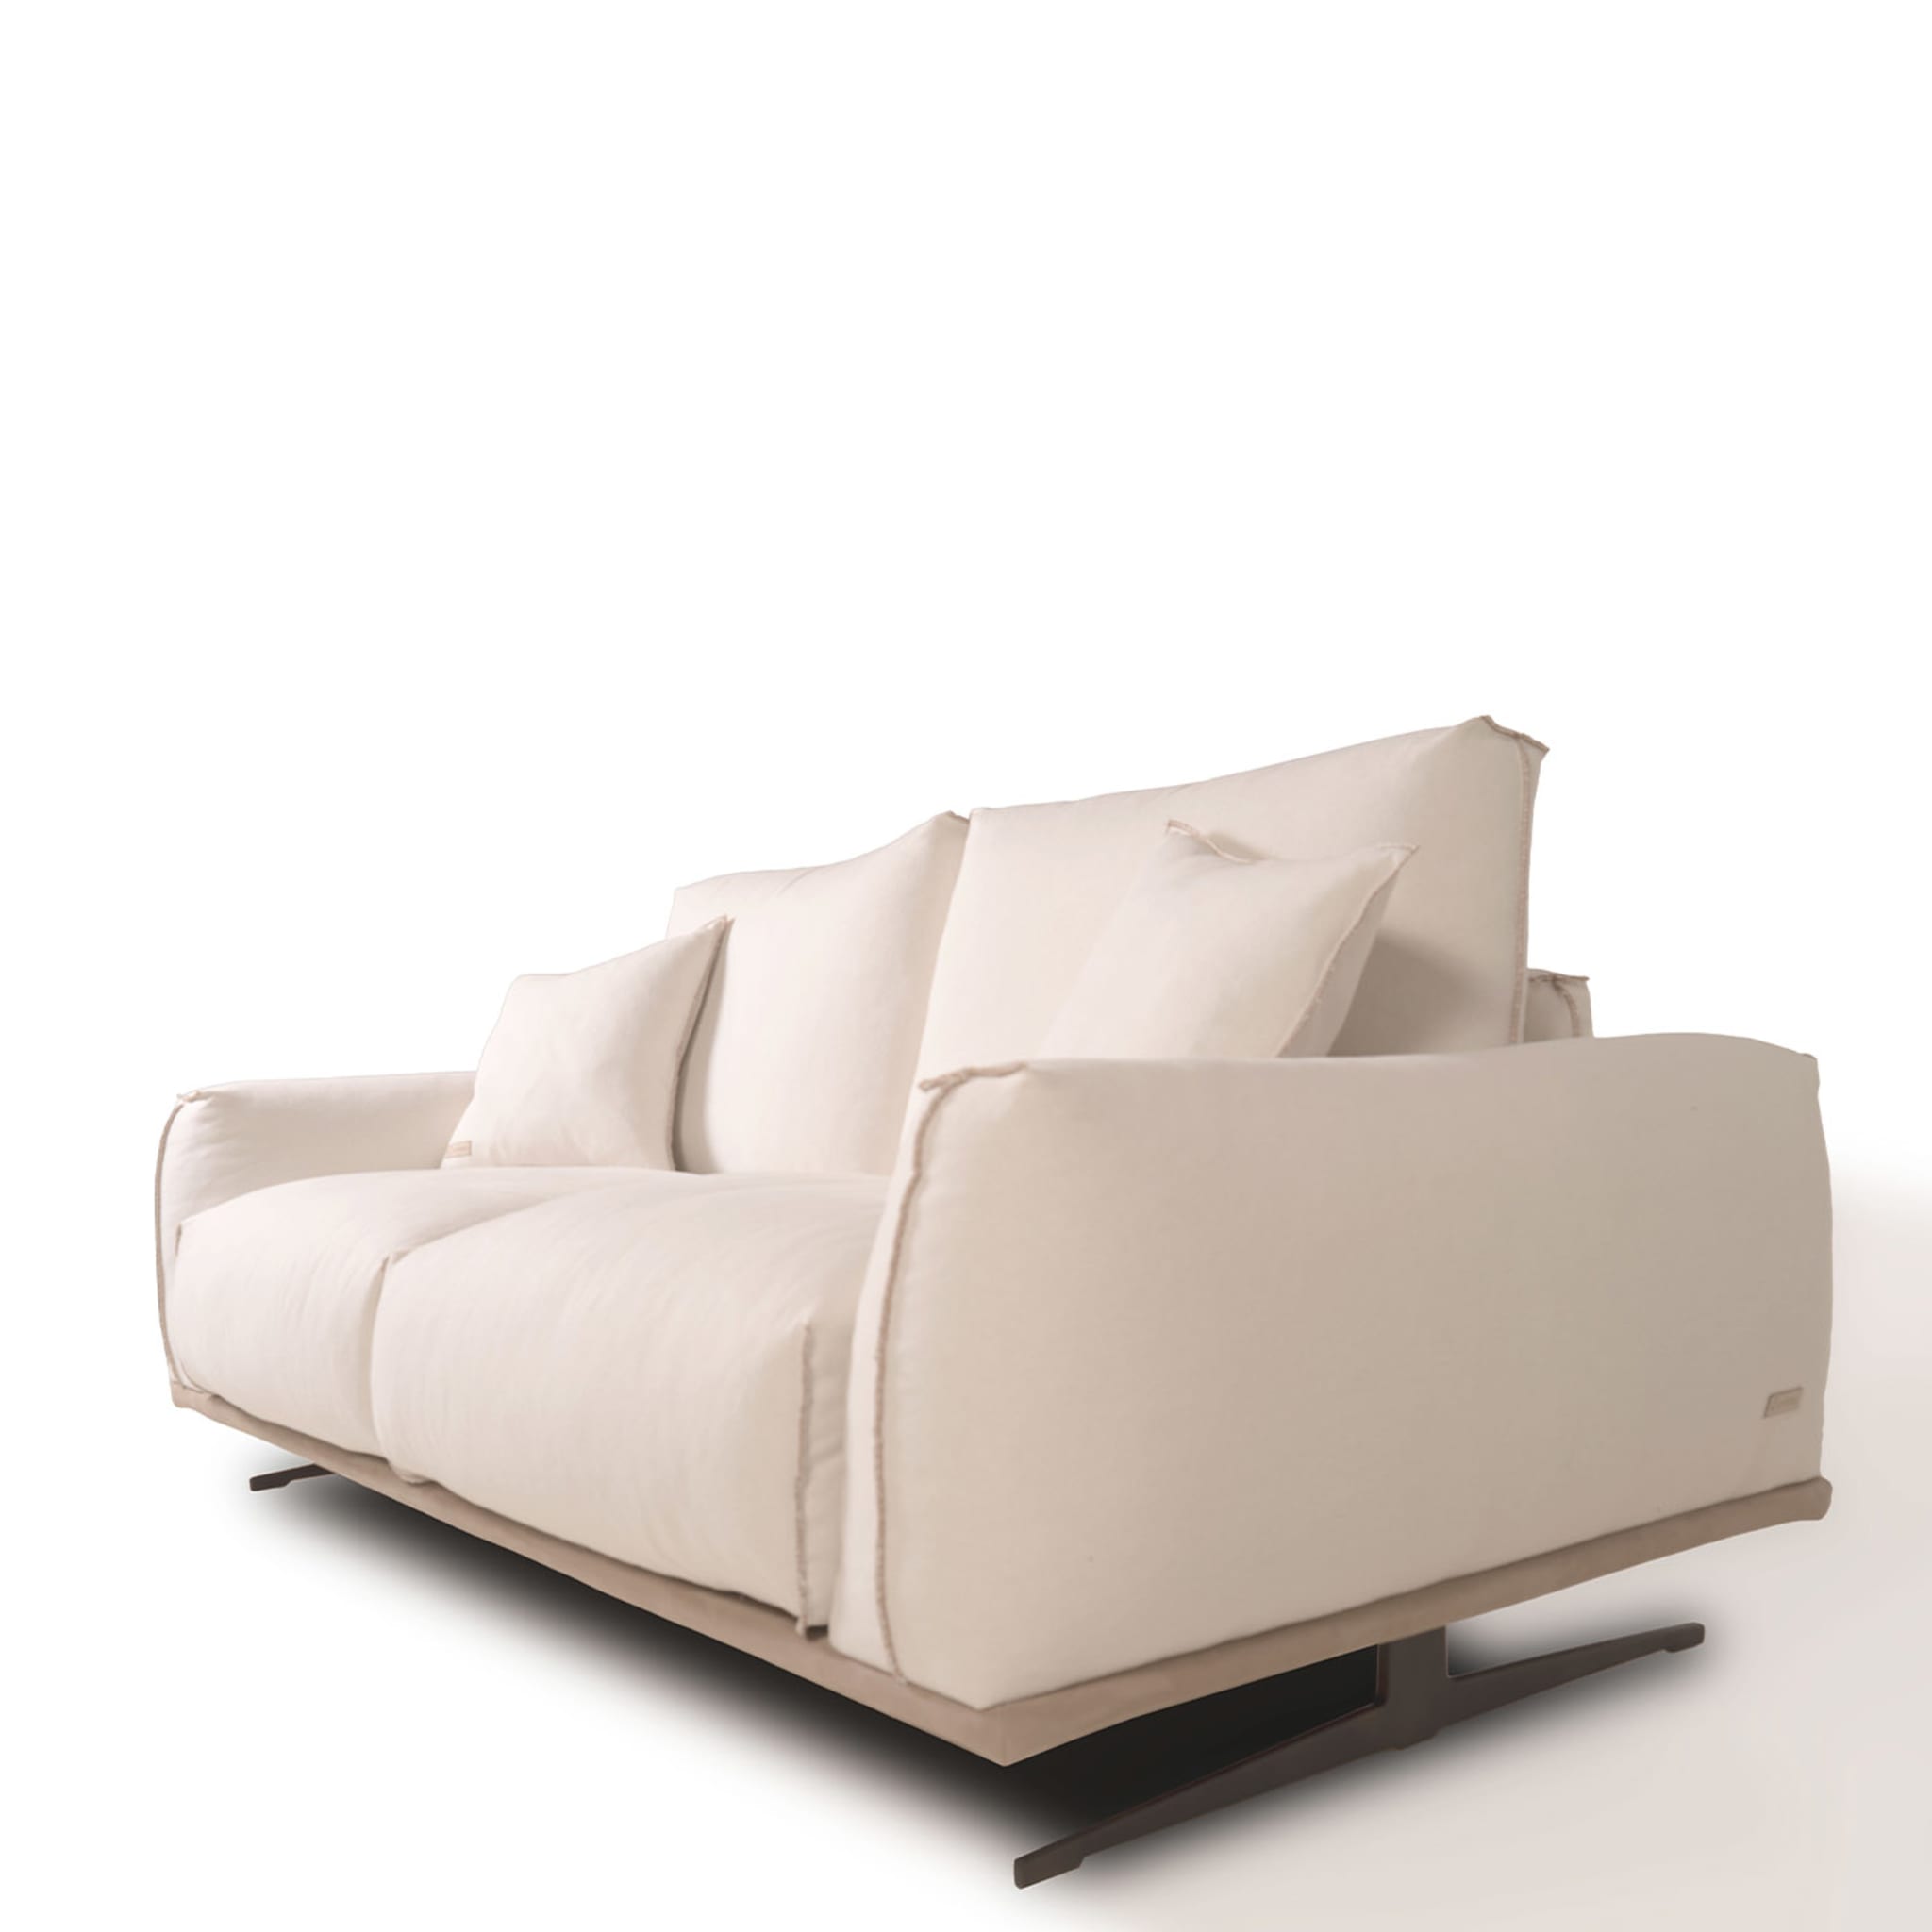 Boboli 2 Seater Sofa by Marco and Giulio Mantellassi - Alternative view 1